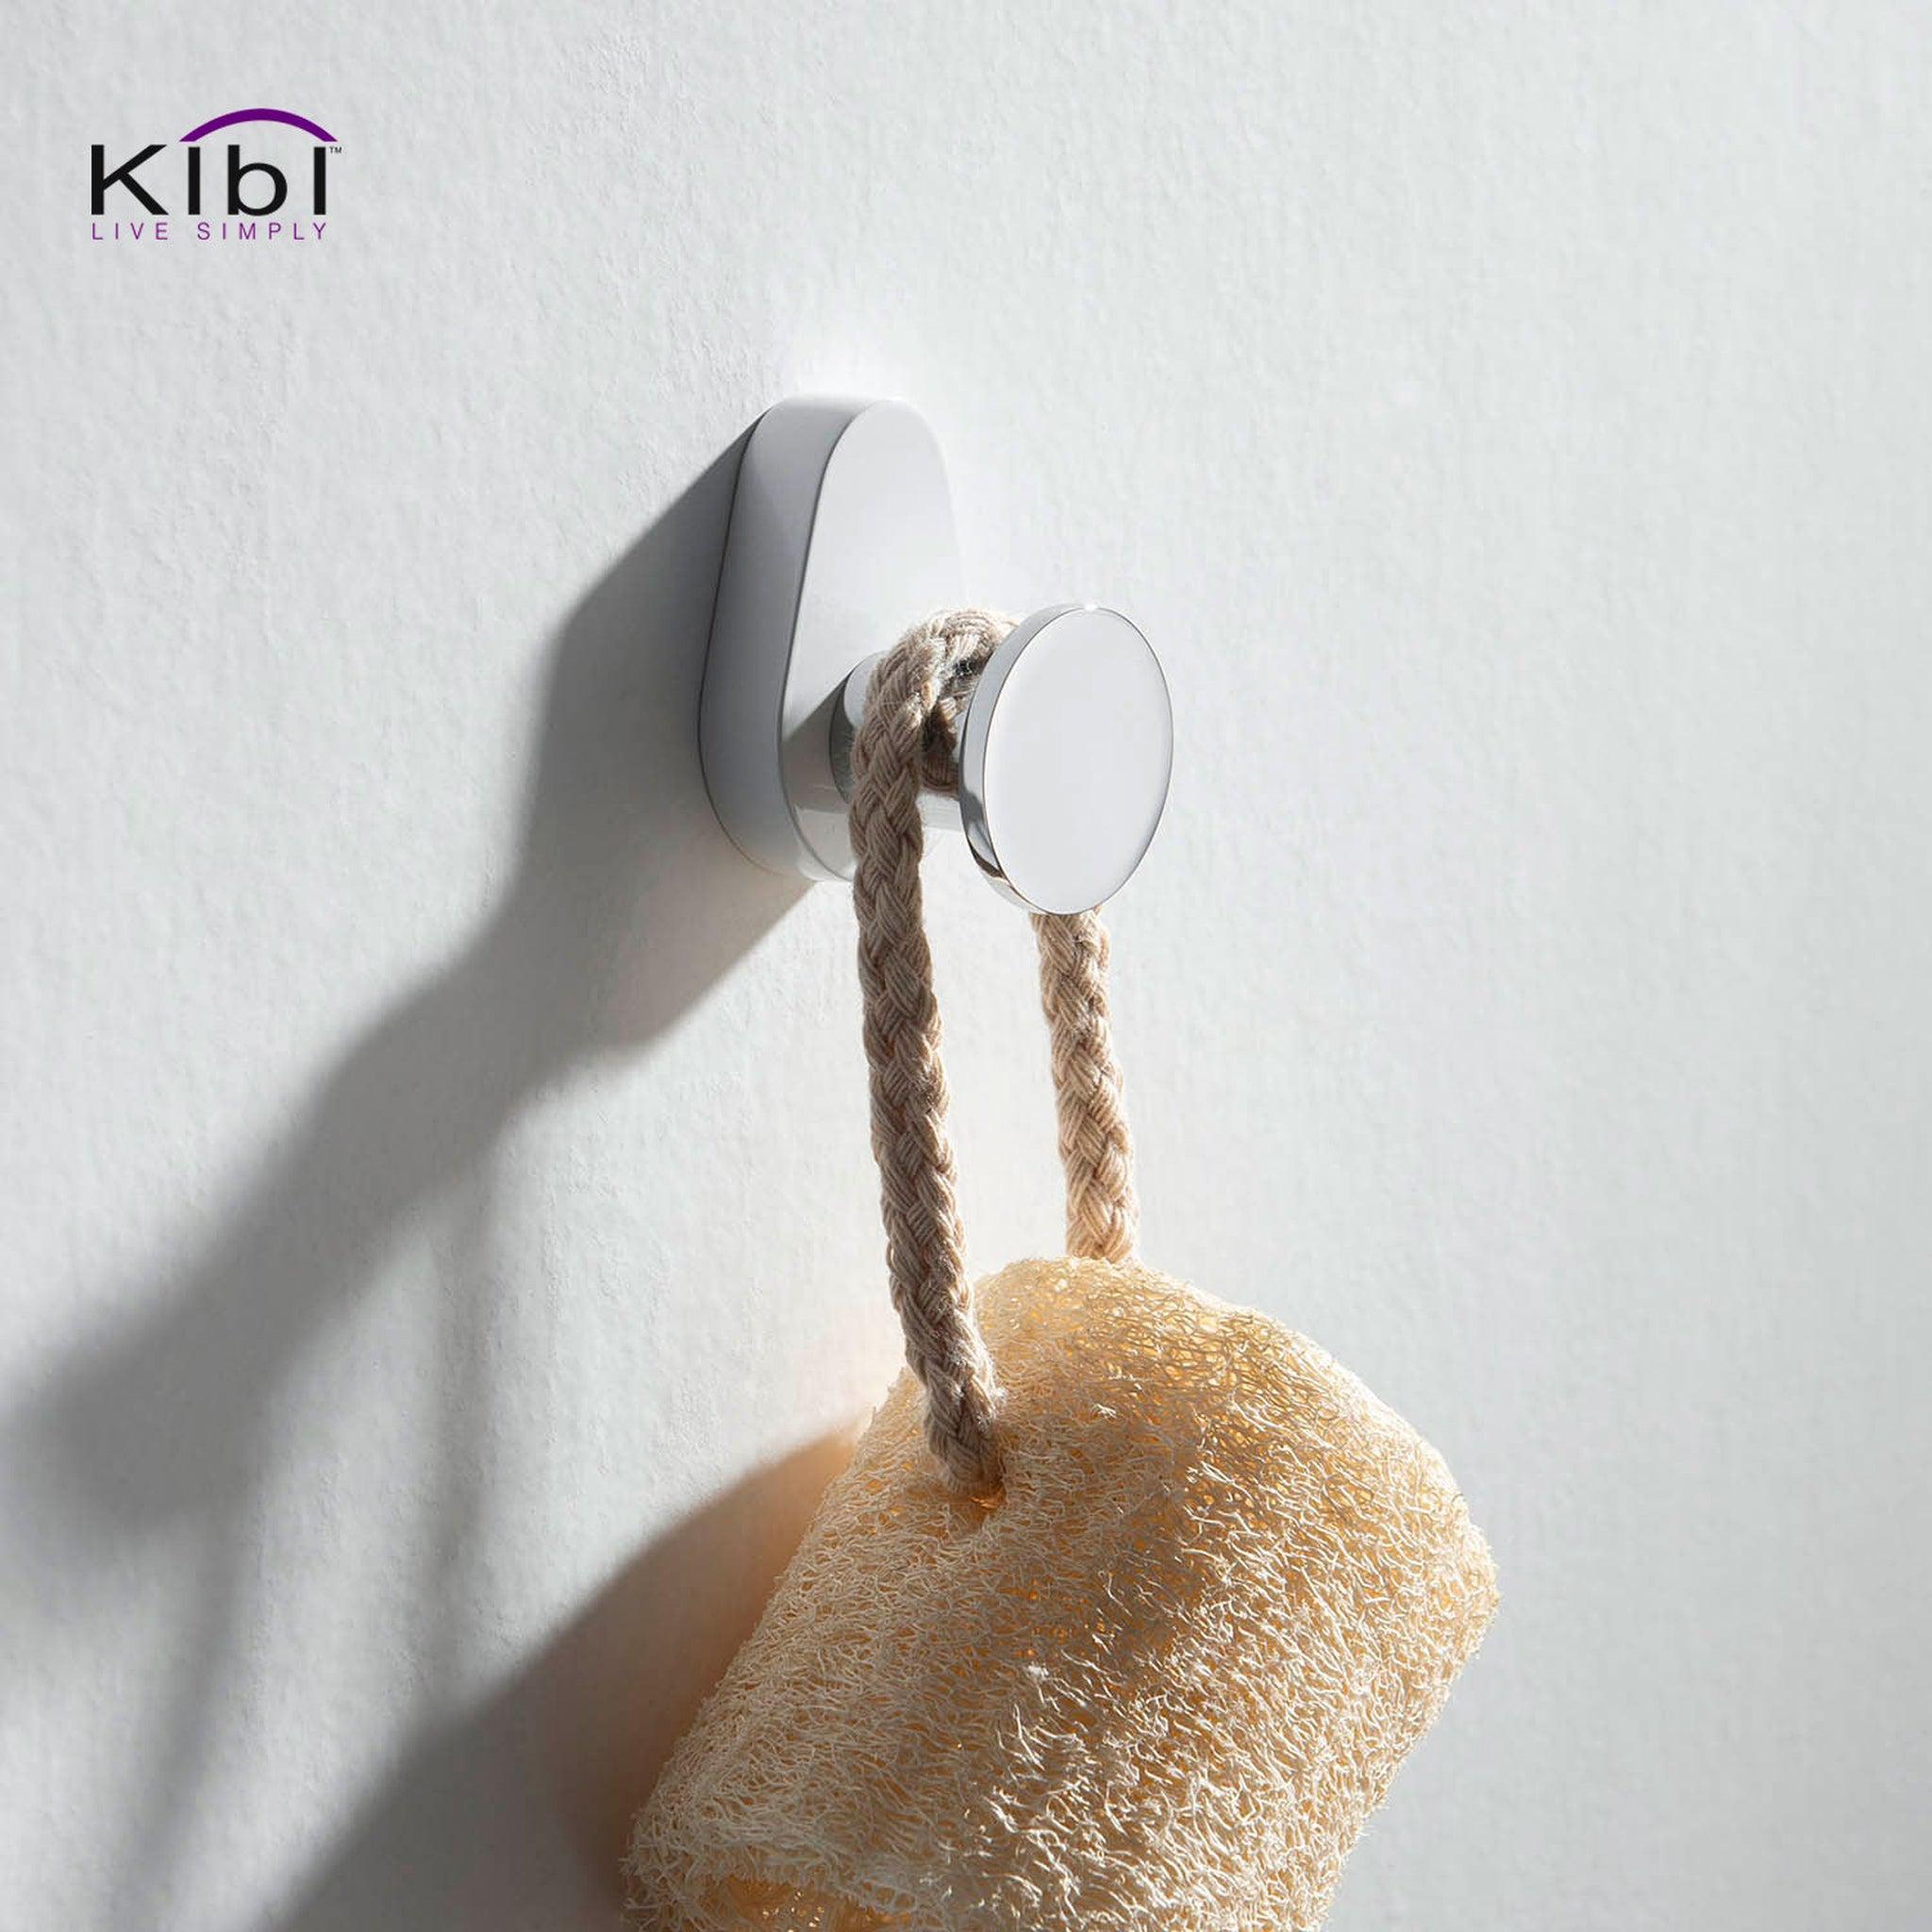 KIBI, KIBI Volcano Bathroom Robe Hook in Chrome White Finish